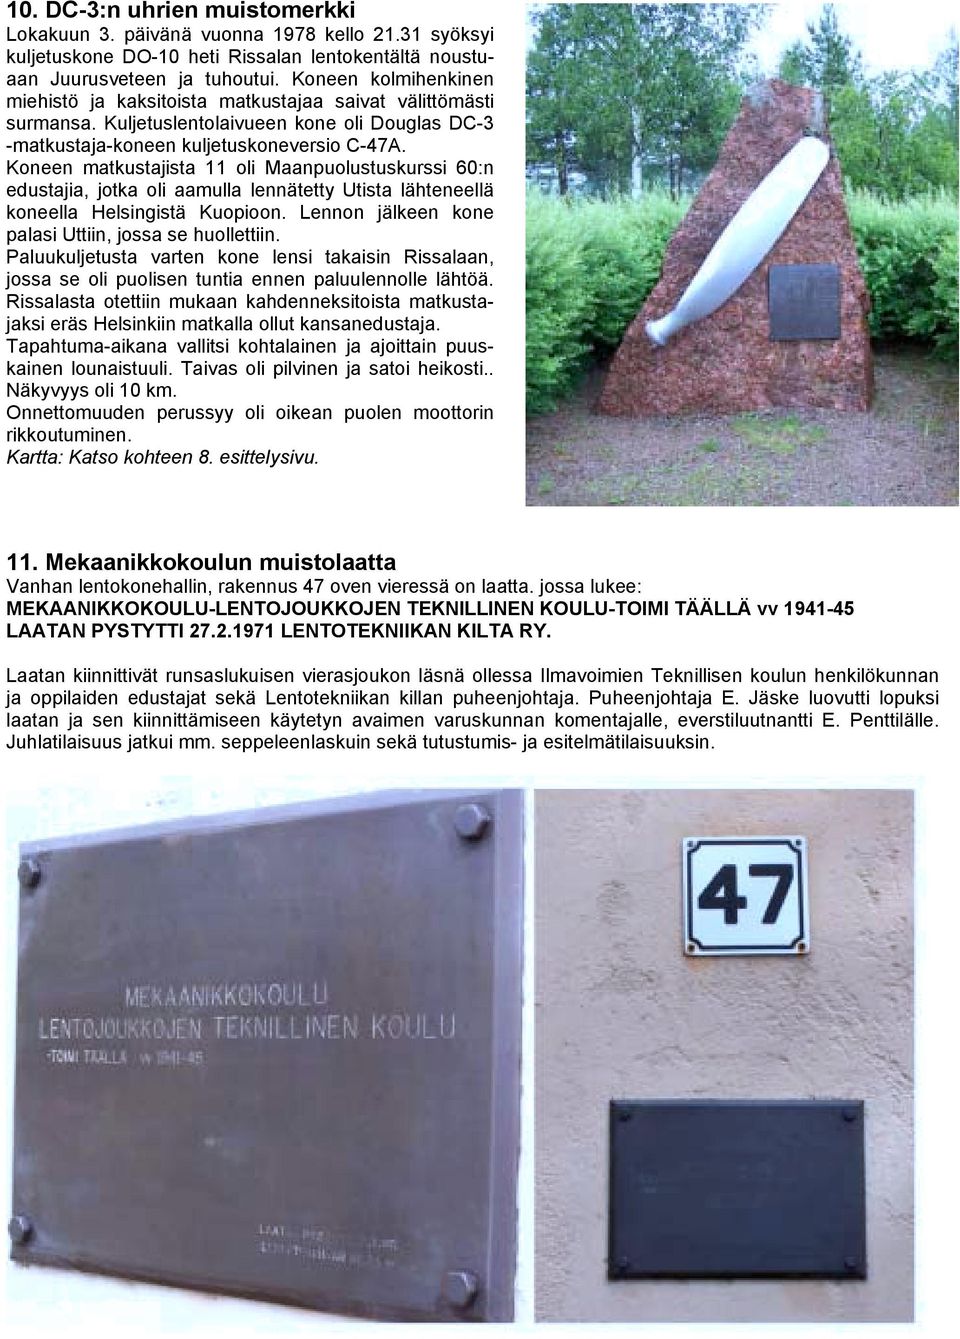 Koneen matkustajista 11 oli Maanpuolustuskurssi 60:n edustajia, jotka oli aamulla lennätetty Utista lähteneellä koneella Helsingistä Kuopioon. Lennon jälkeen kone palasi Uttiin, jossa se huollettiin.